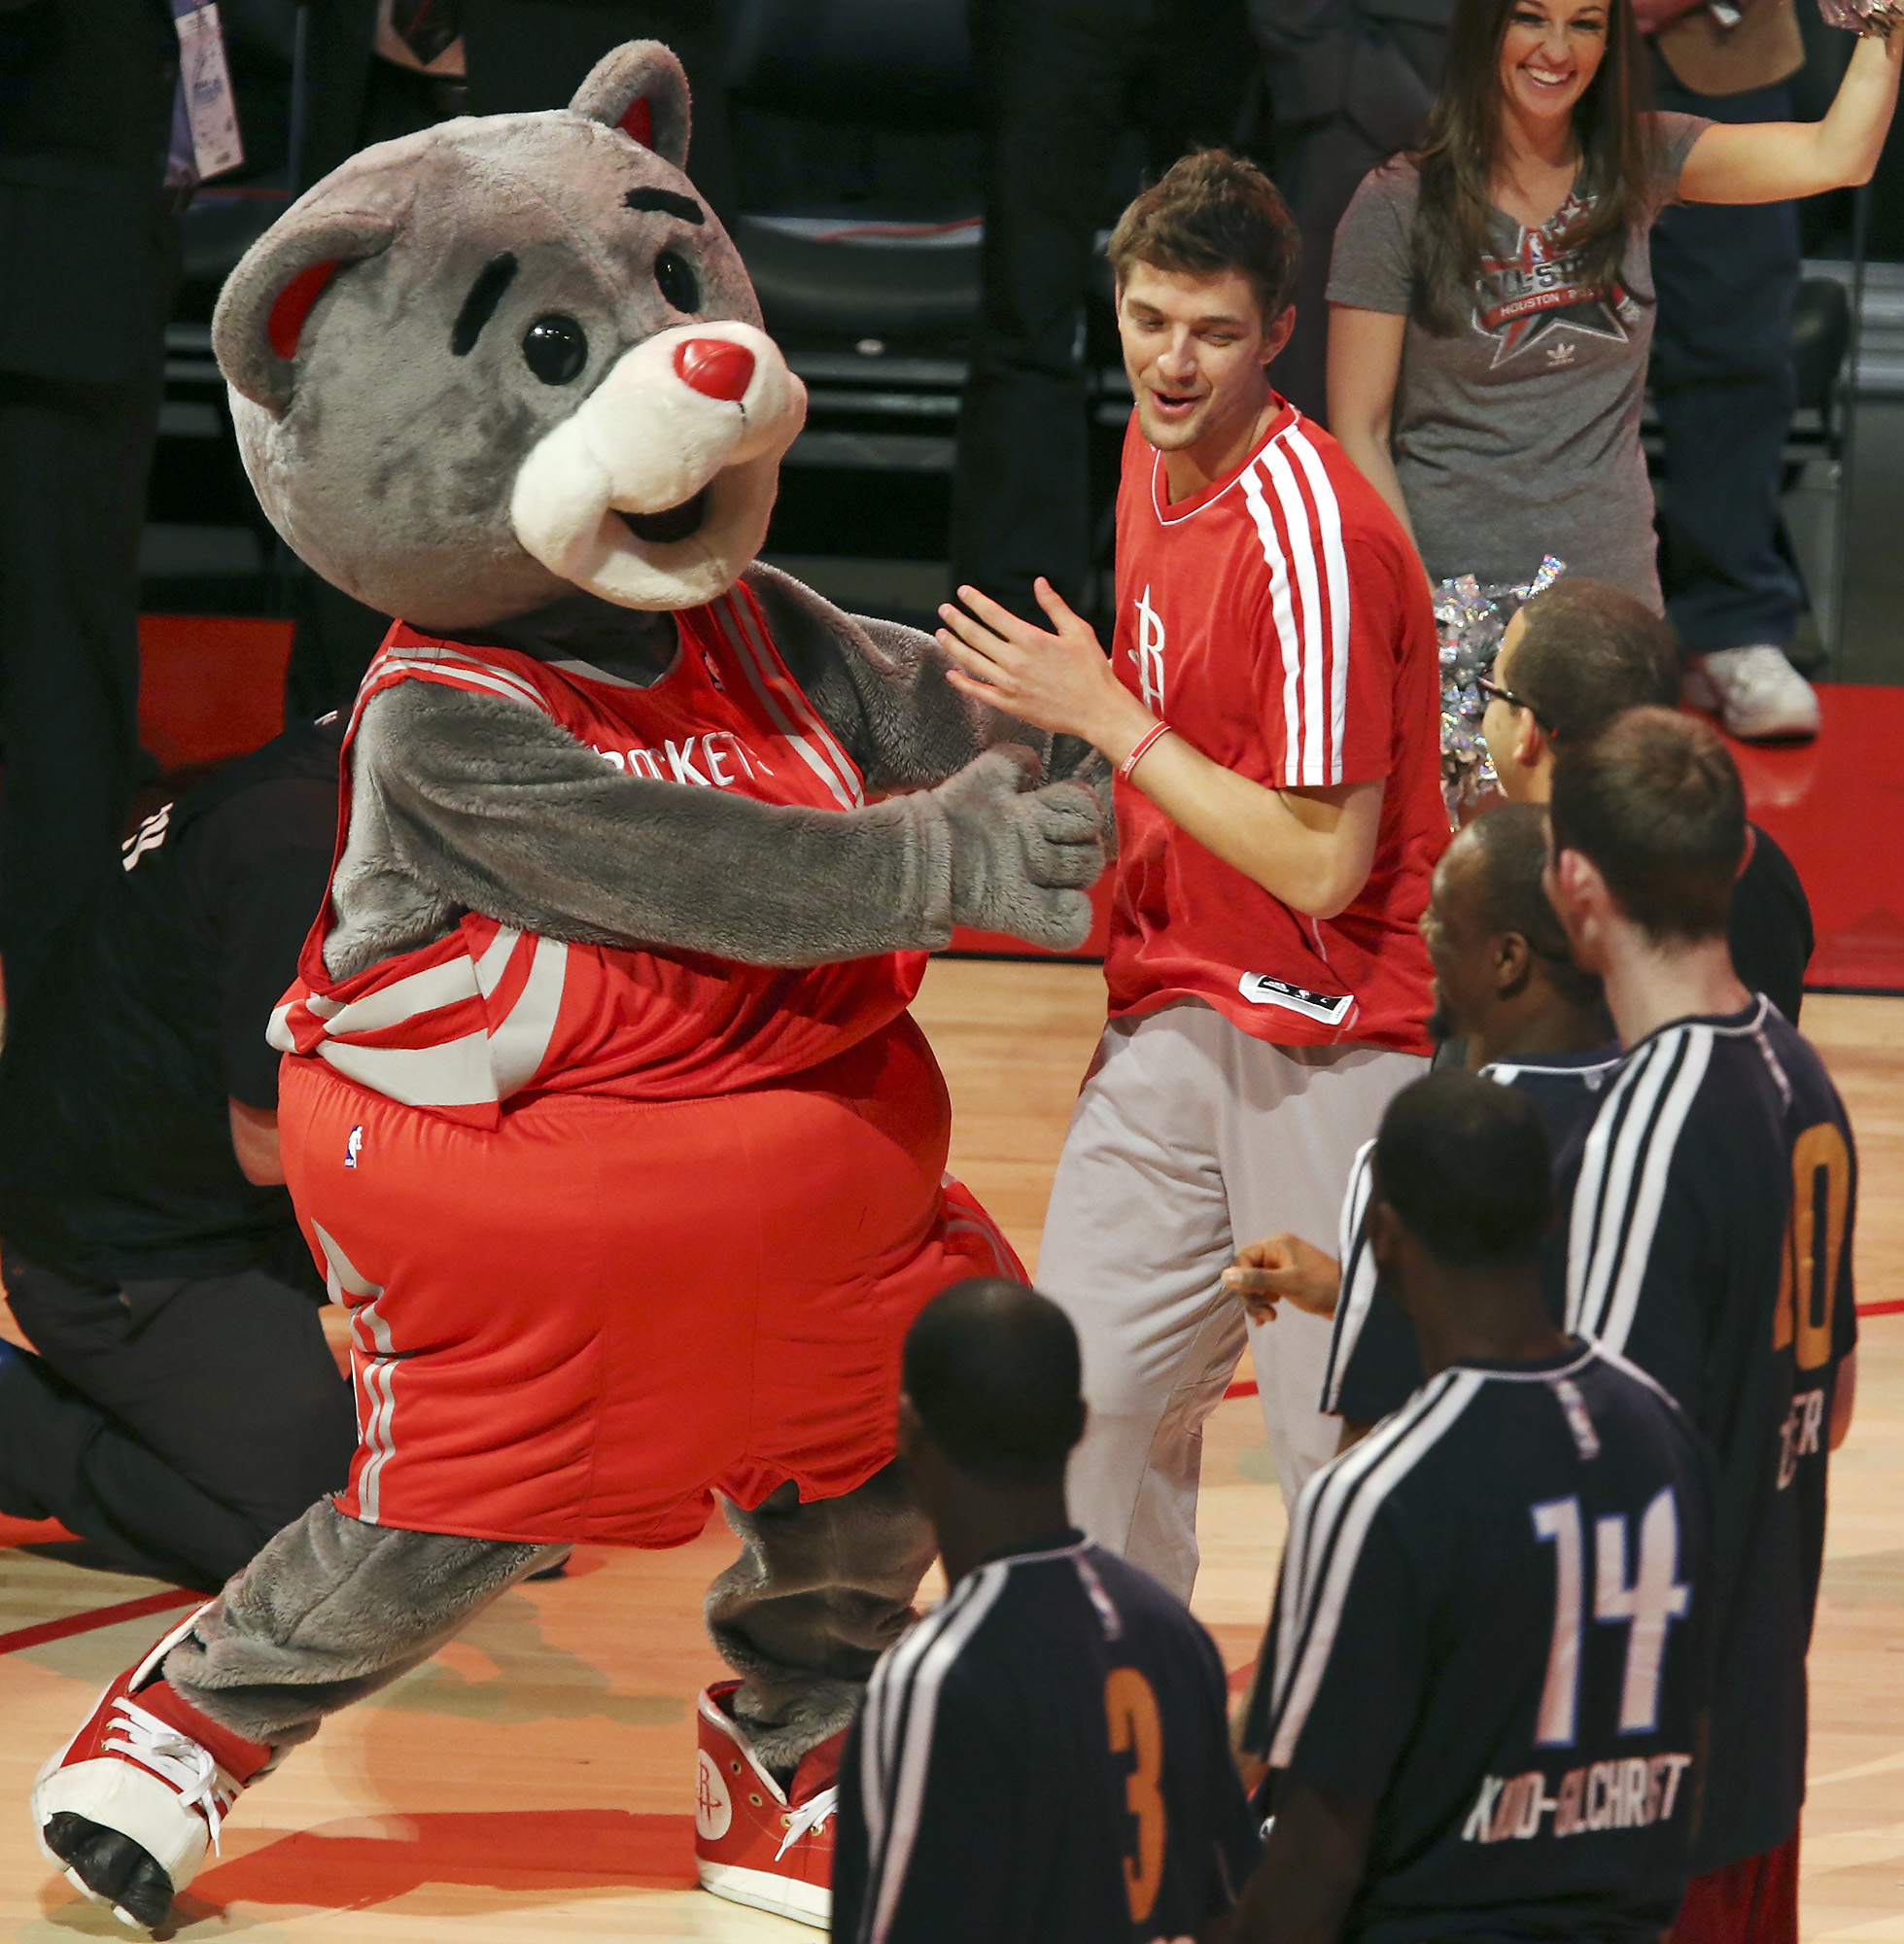 April 03, 2011: Houston Rockets mascot Clutch the Bear takes a